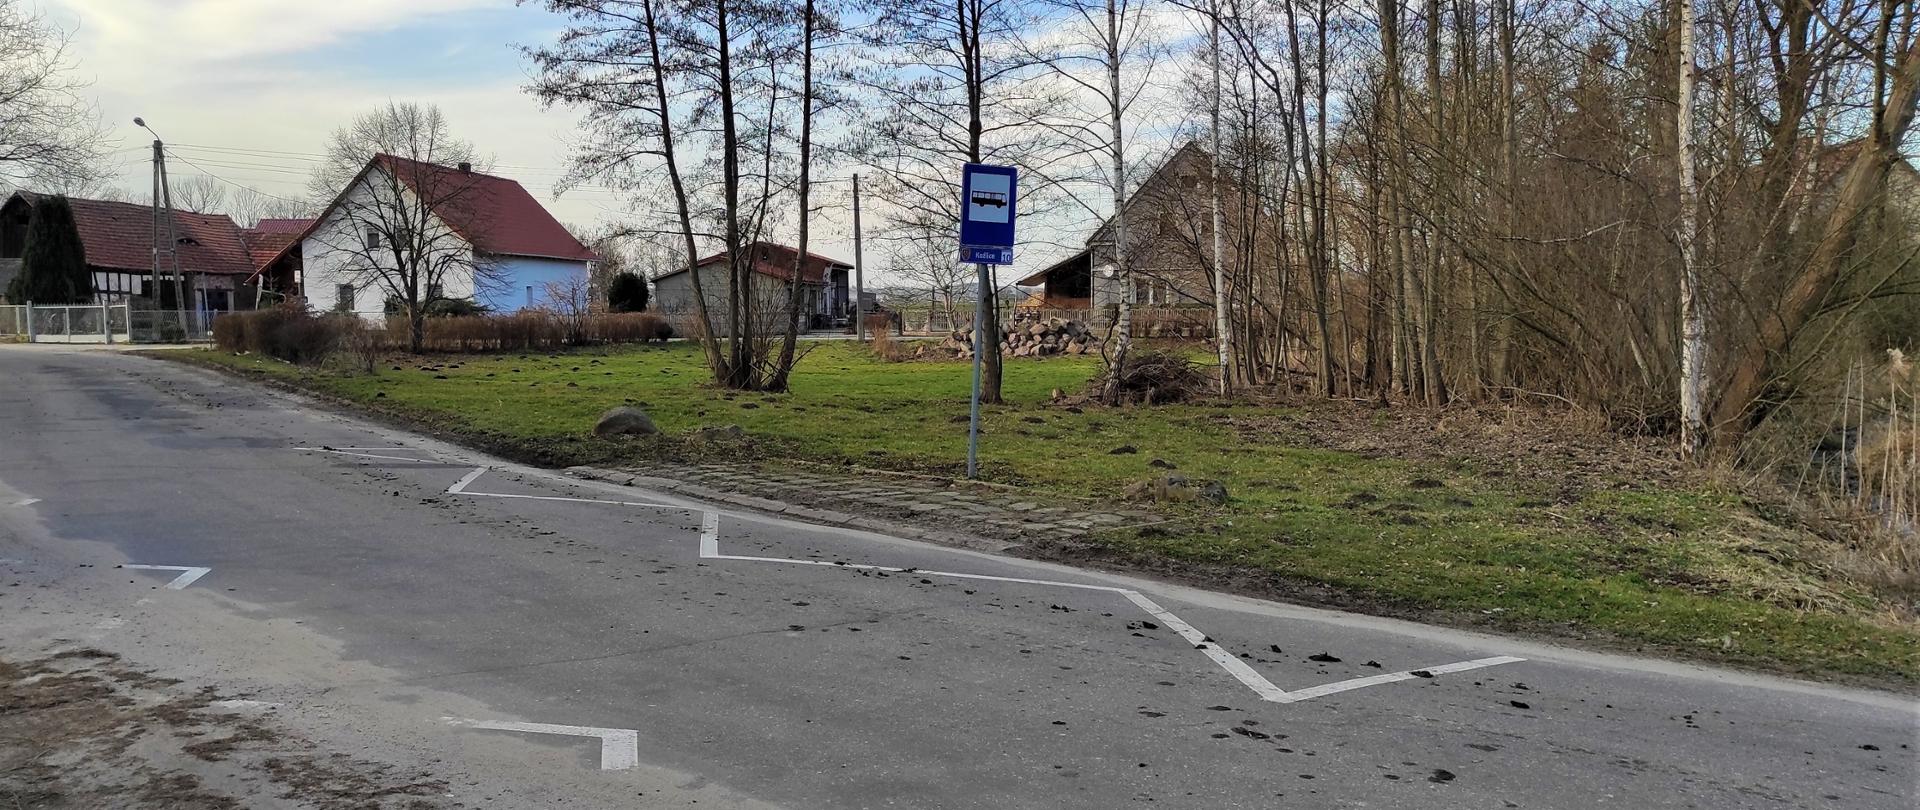 widok drogi przeznaczonej do remontu we wsi Koźlice, na drodze linie oznaczające przystanek autobusowy